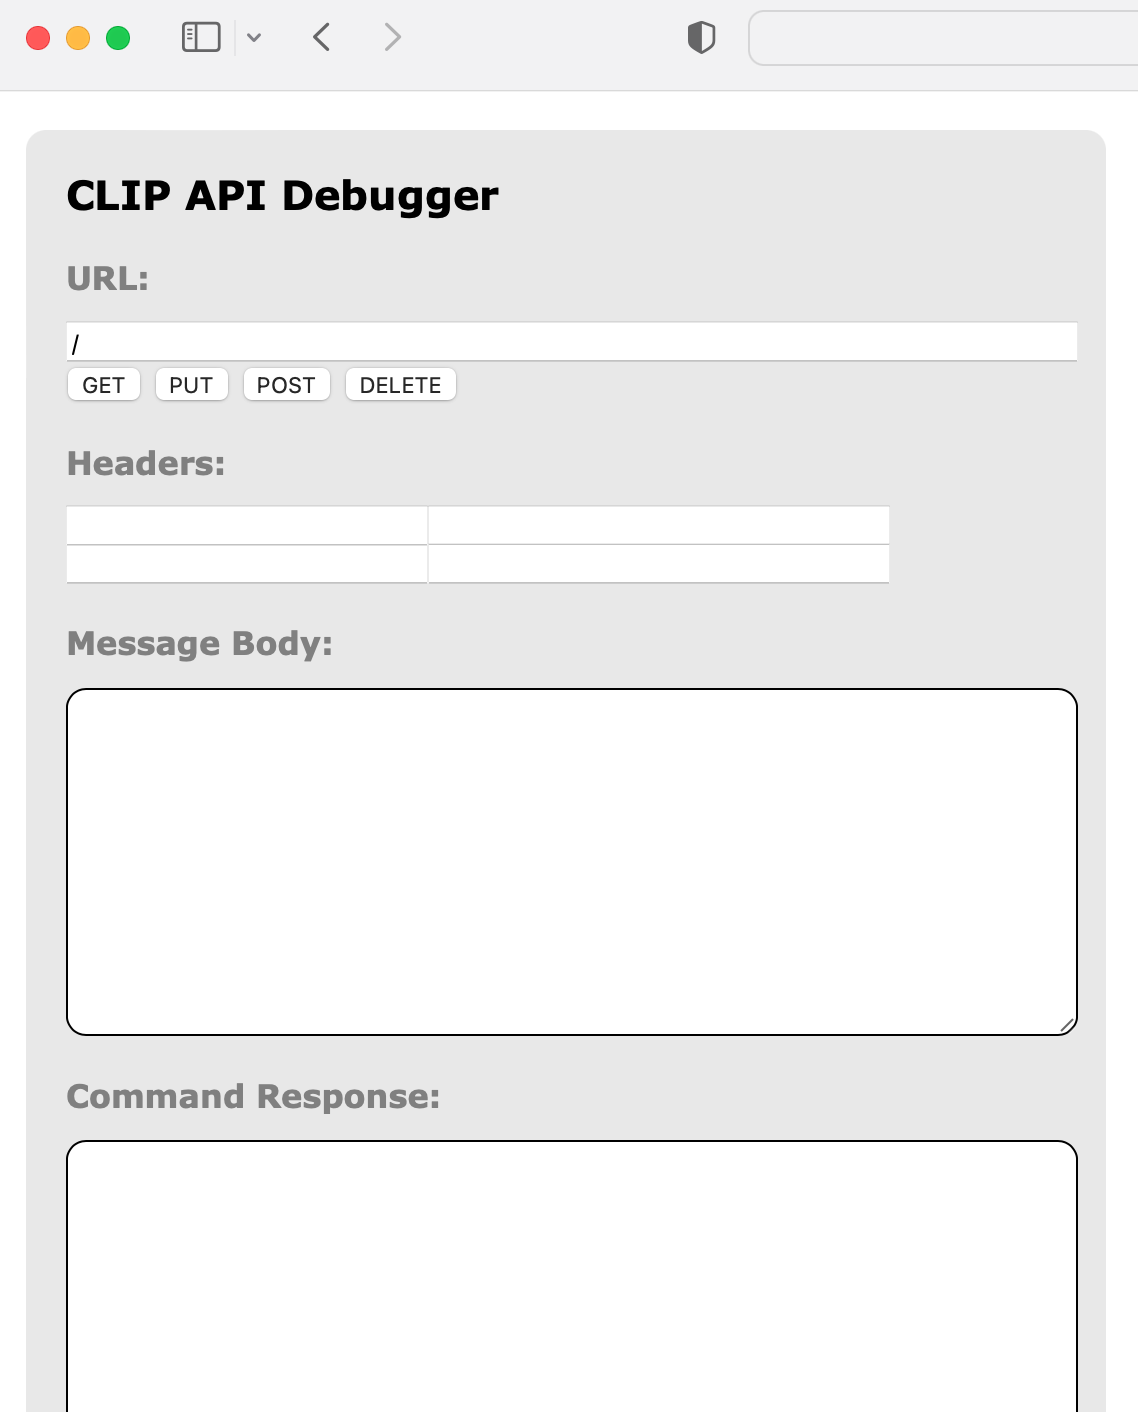 The CLIP API Debugger